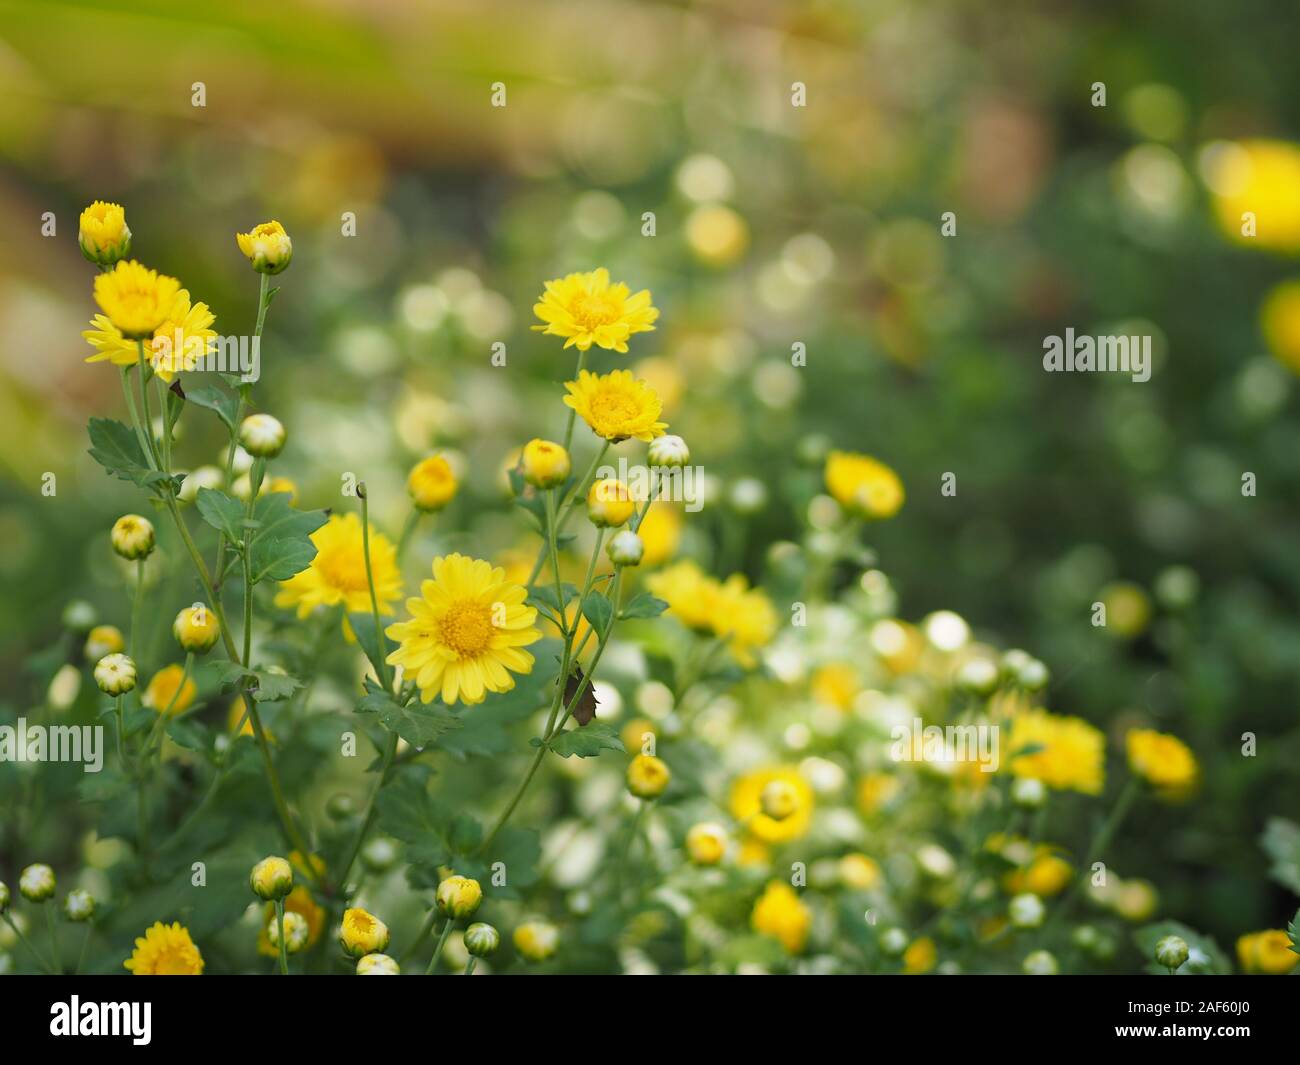 Chrysanthemum yellow flower in nature blurred of background Scientific name Chrysanthemum morifolium Ramat Stock Photo